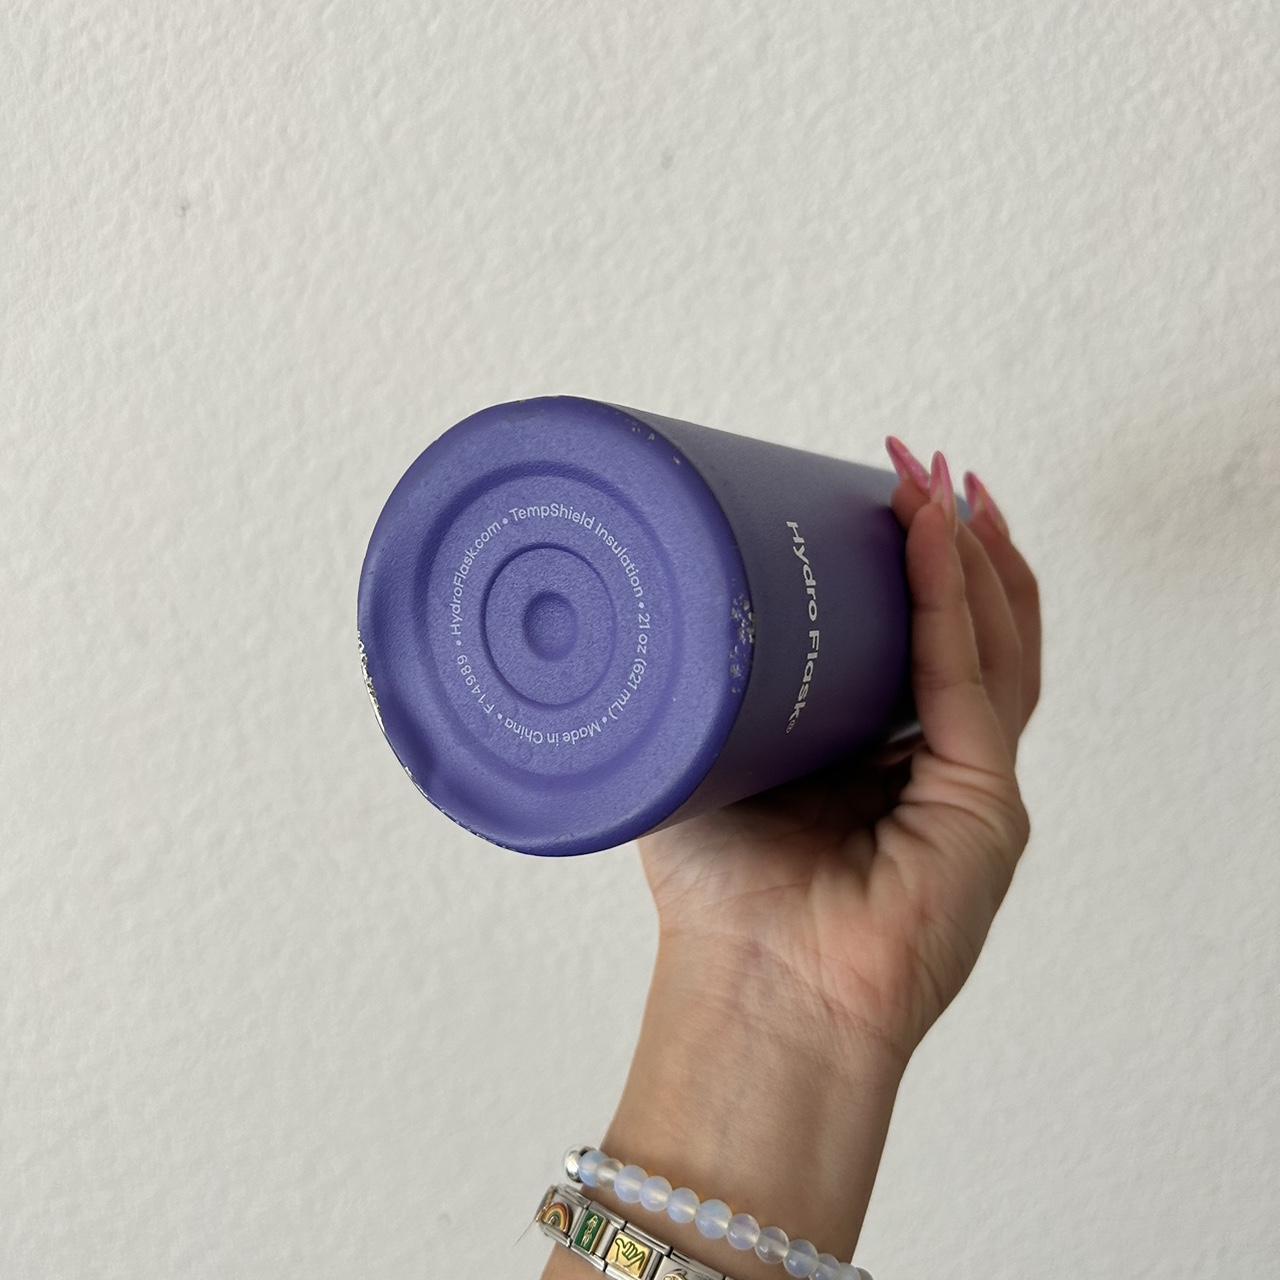 Purple hydro flask - Depop